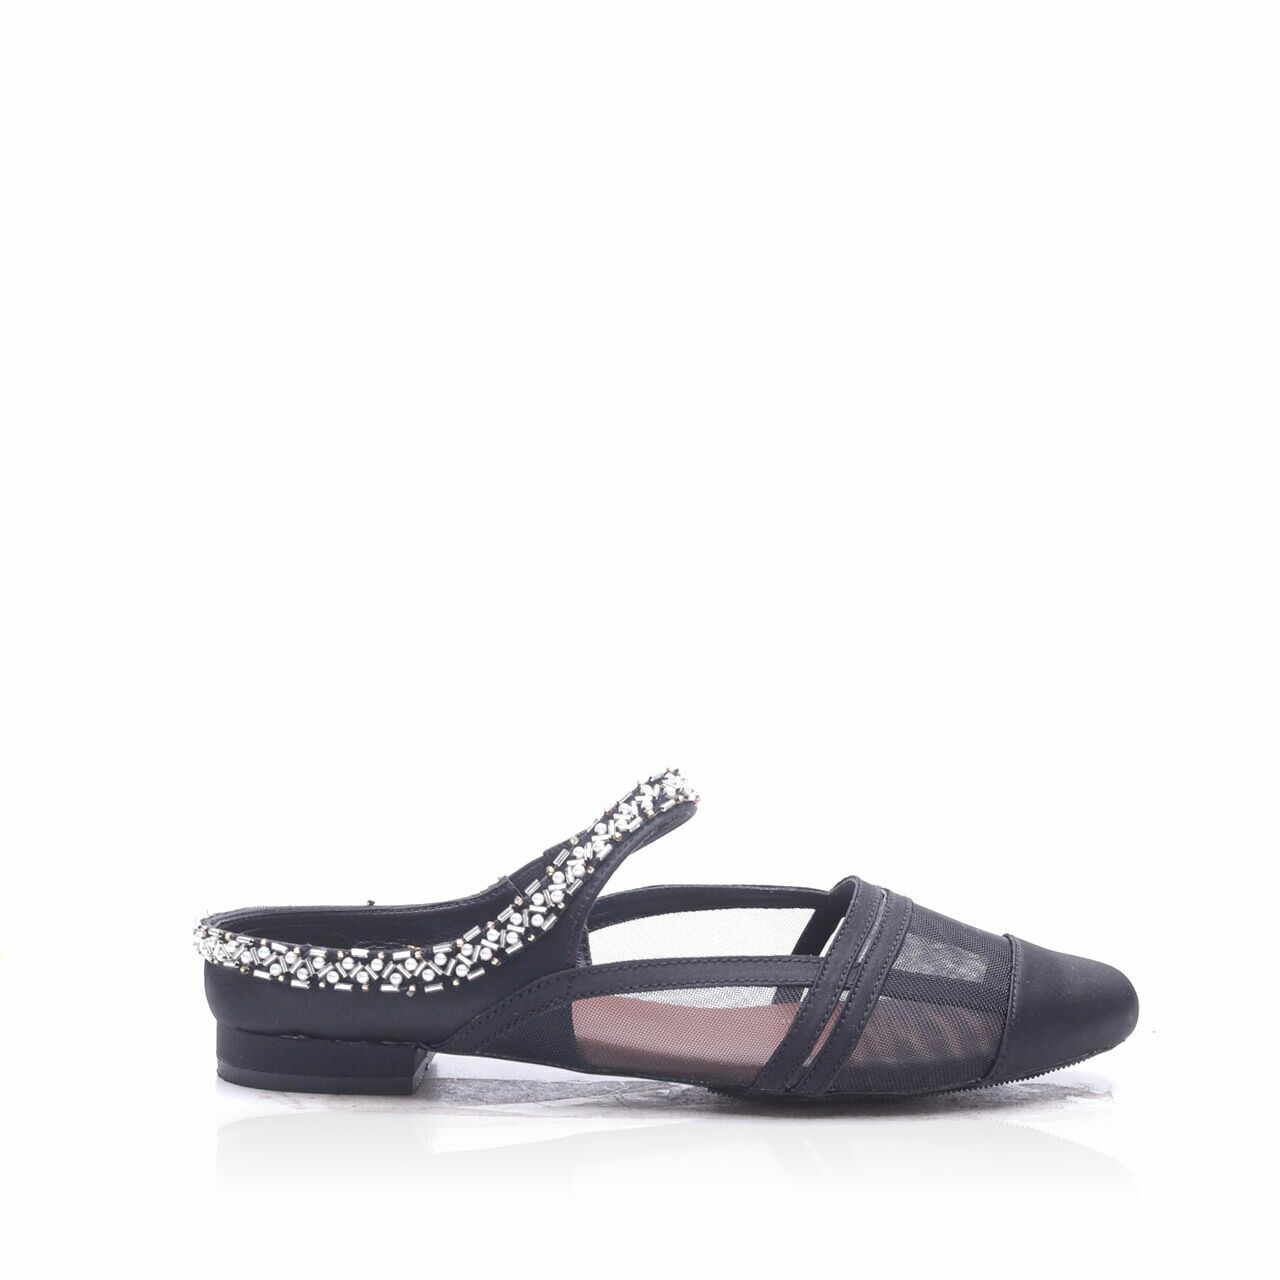 jeffry tan Black Sequin Paris Flat Sandals